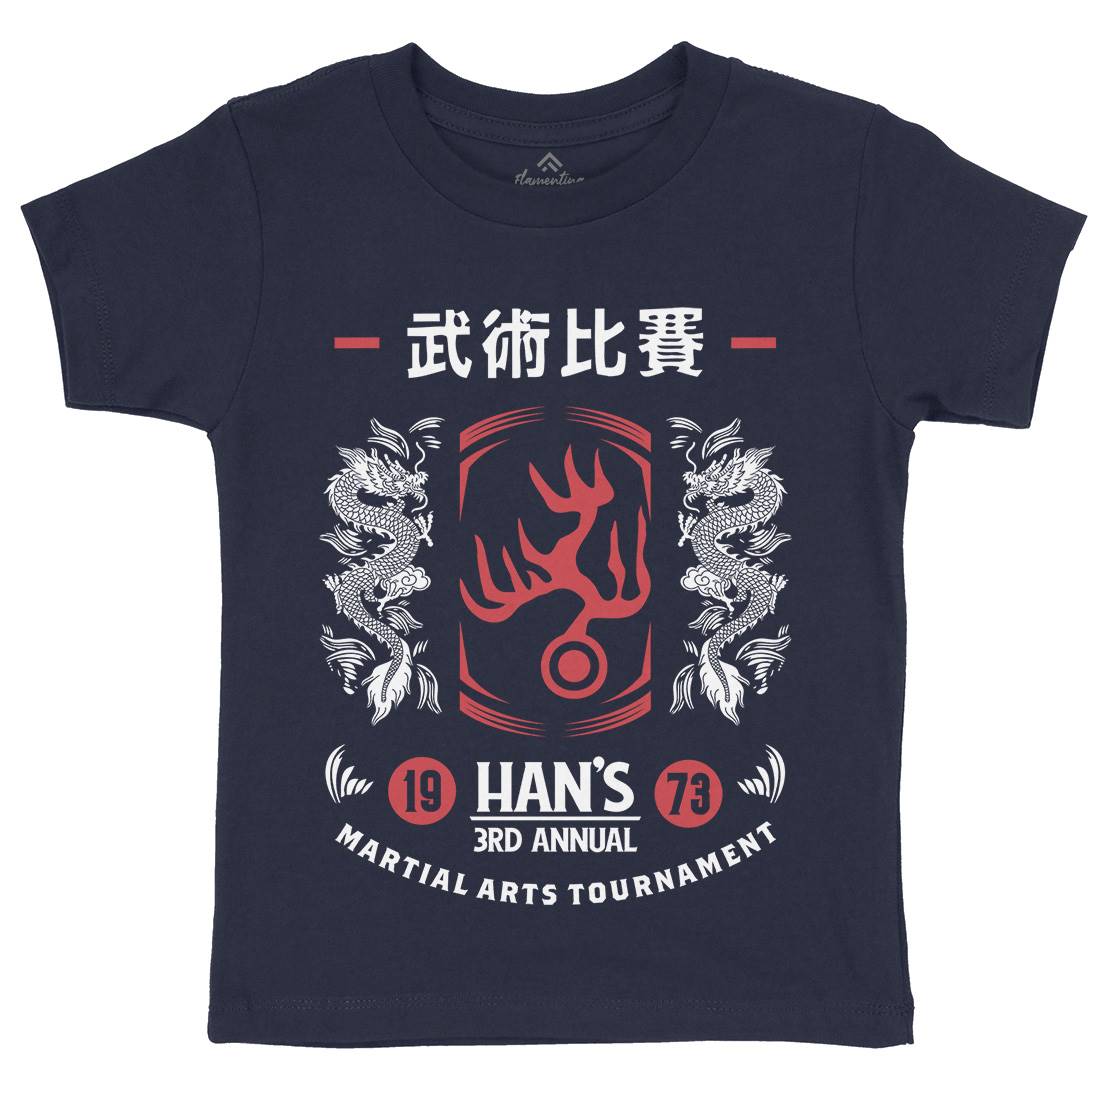 Hans Tournament Kids Crew Neck T-Shirt Sport D188